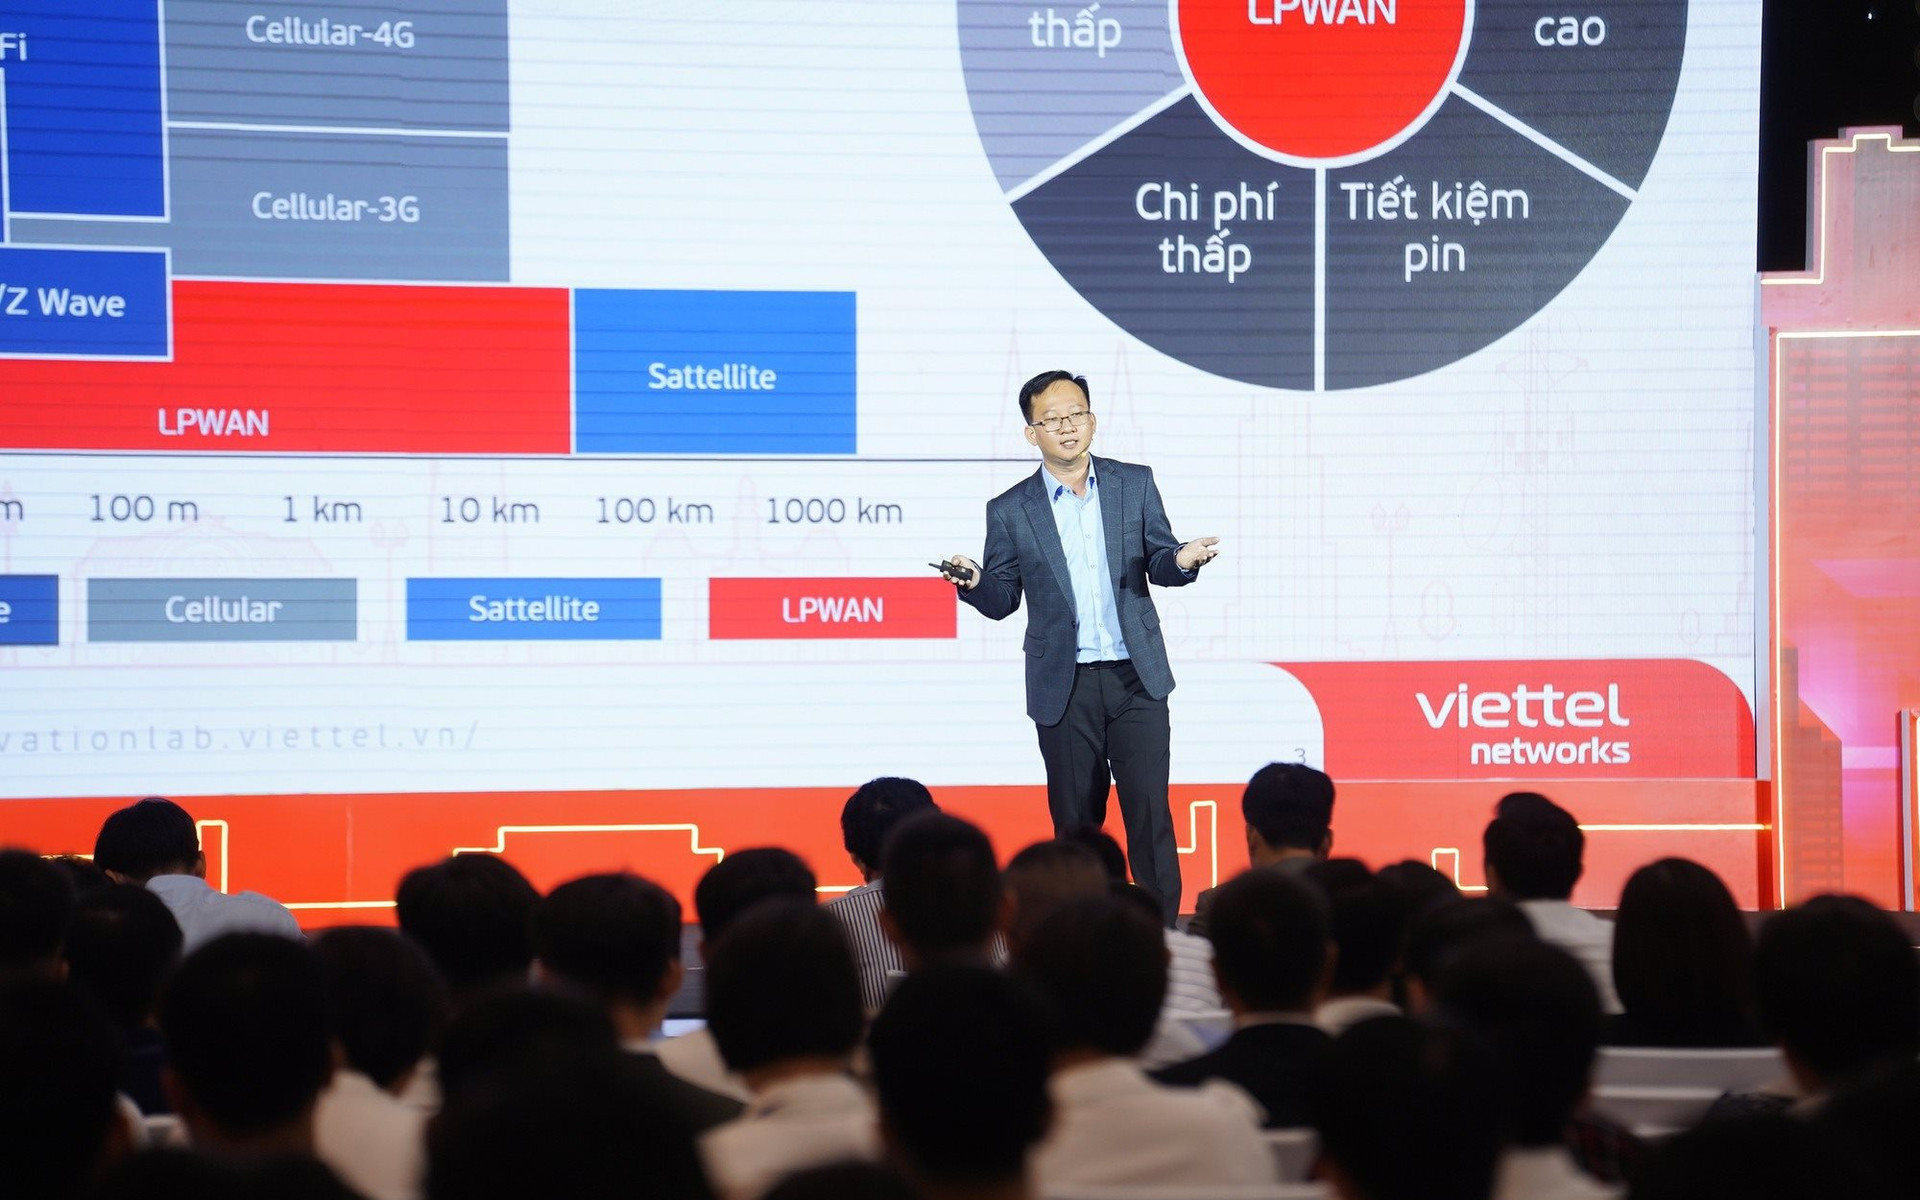 Đề xuất thành lập Hiệp hội IoT để Việt Nam bắt kịp xu hướng thế giới